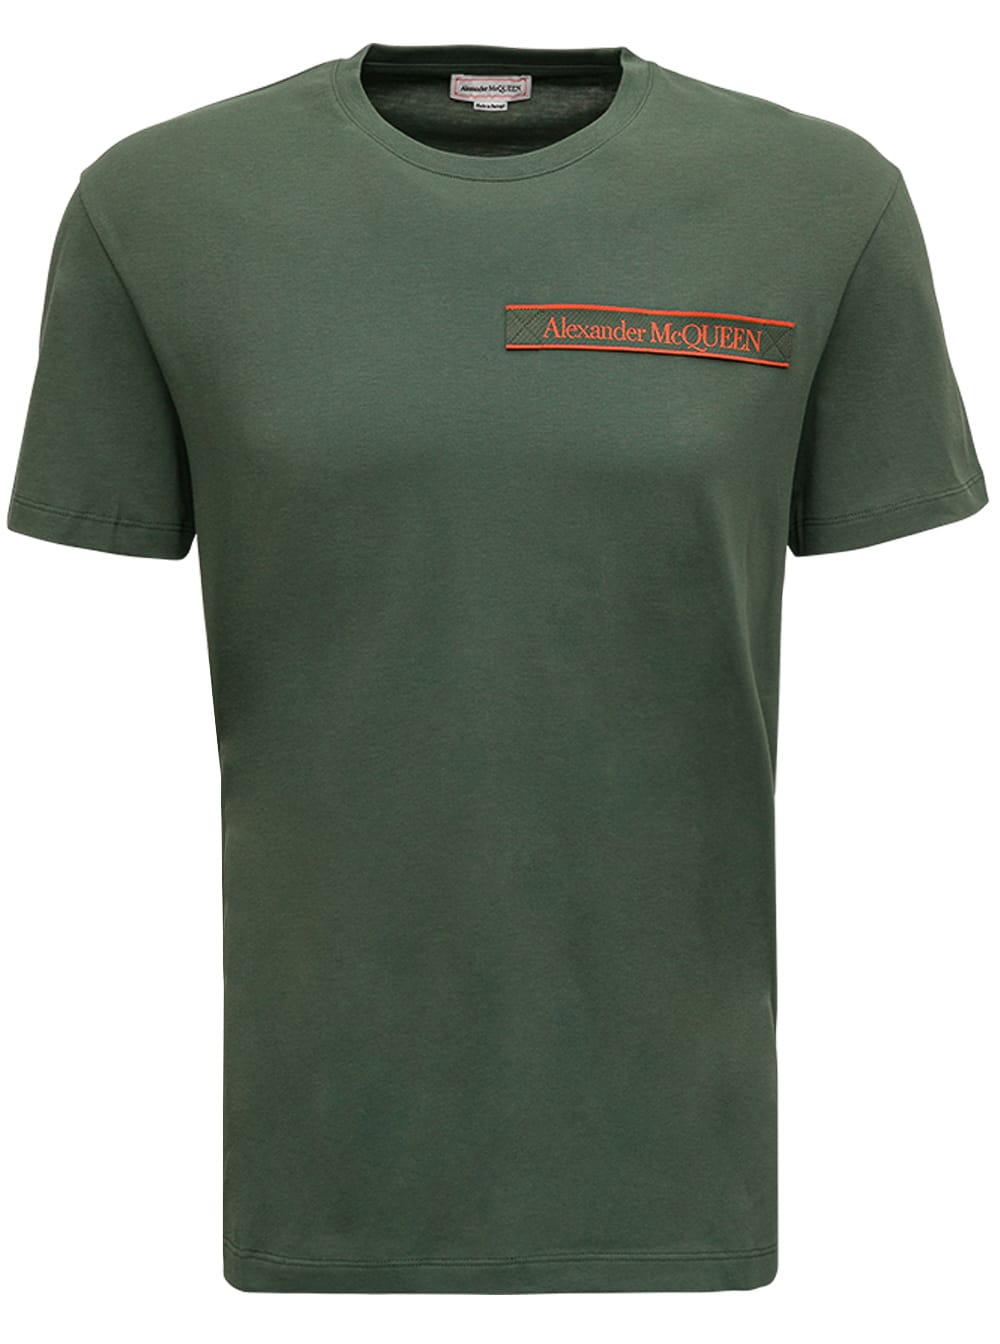 Alexander McQueen Green Cotton T-shirt With Logo